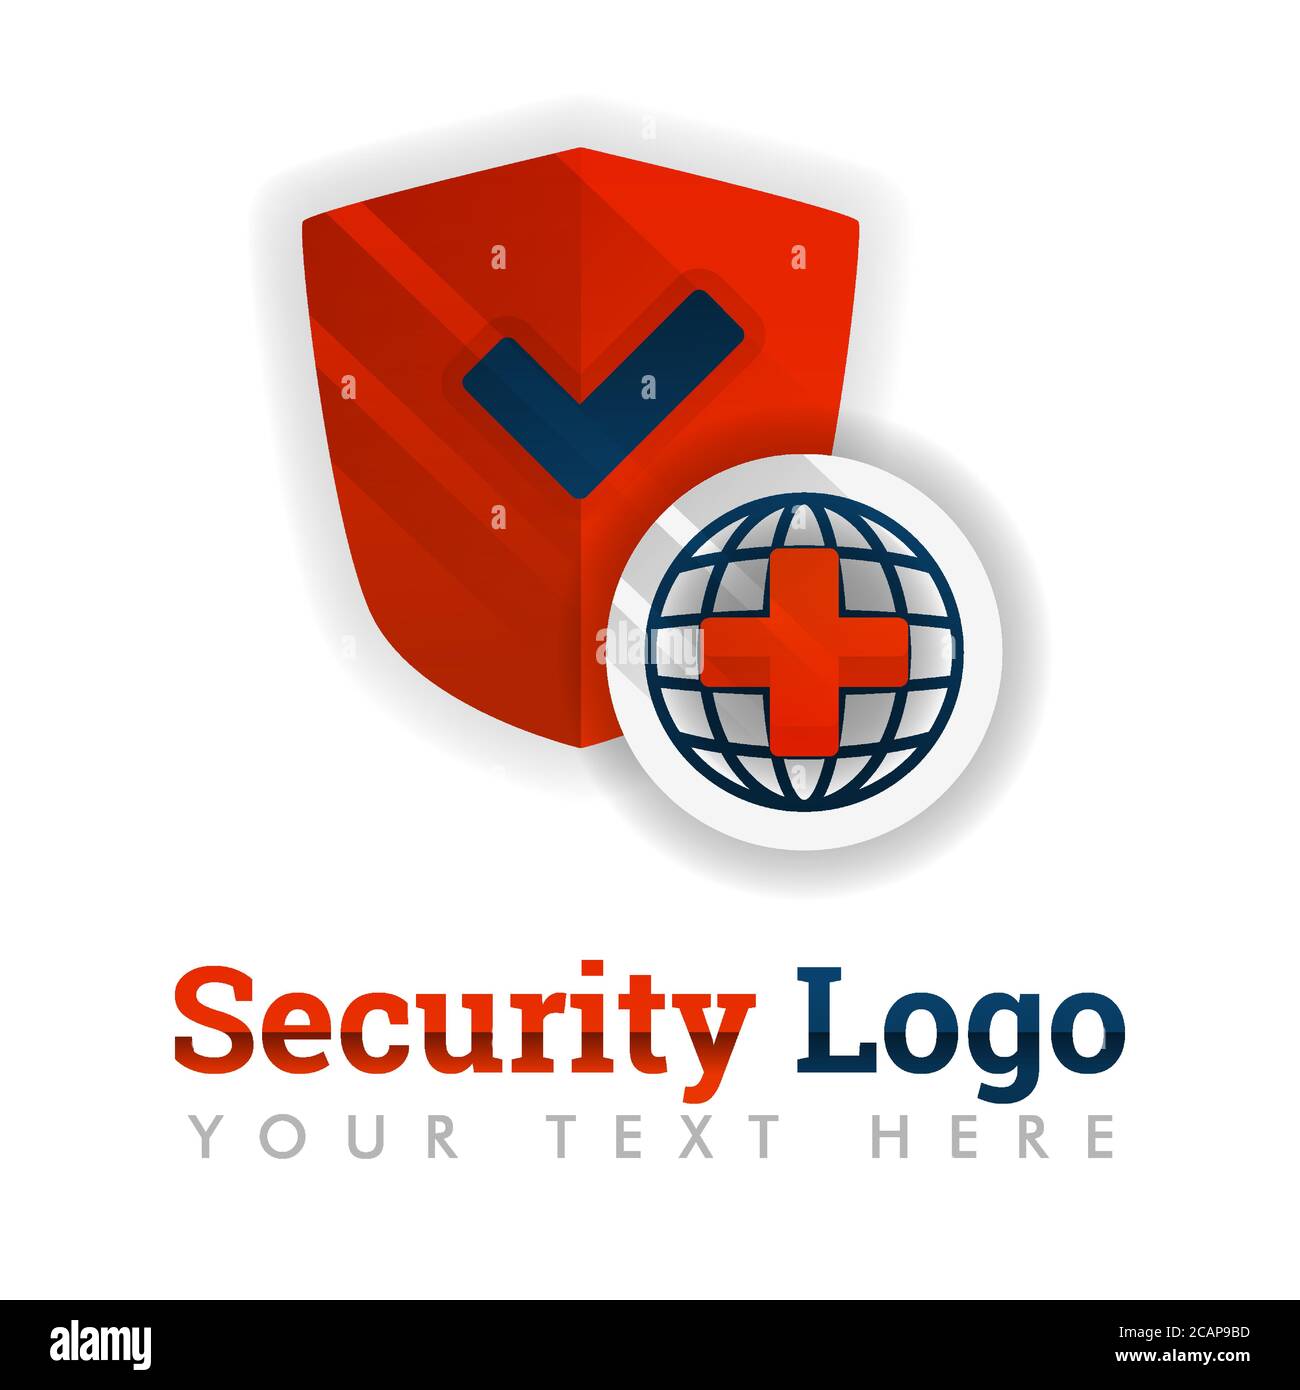 Sicherheits-Logo-Vorlage für Service-Branchen, Kräuter-, Medizin-, Krankenhaus-, Versicherungs-, Gesundheits-, Software-, Antivirus-, Bau-, Sicherheits-Ausrüstung, che Stock Vektor